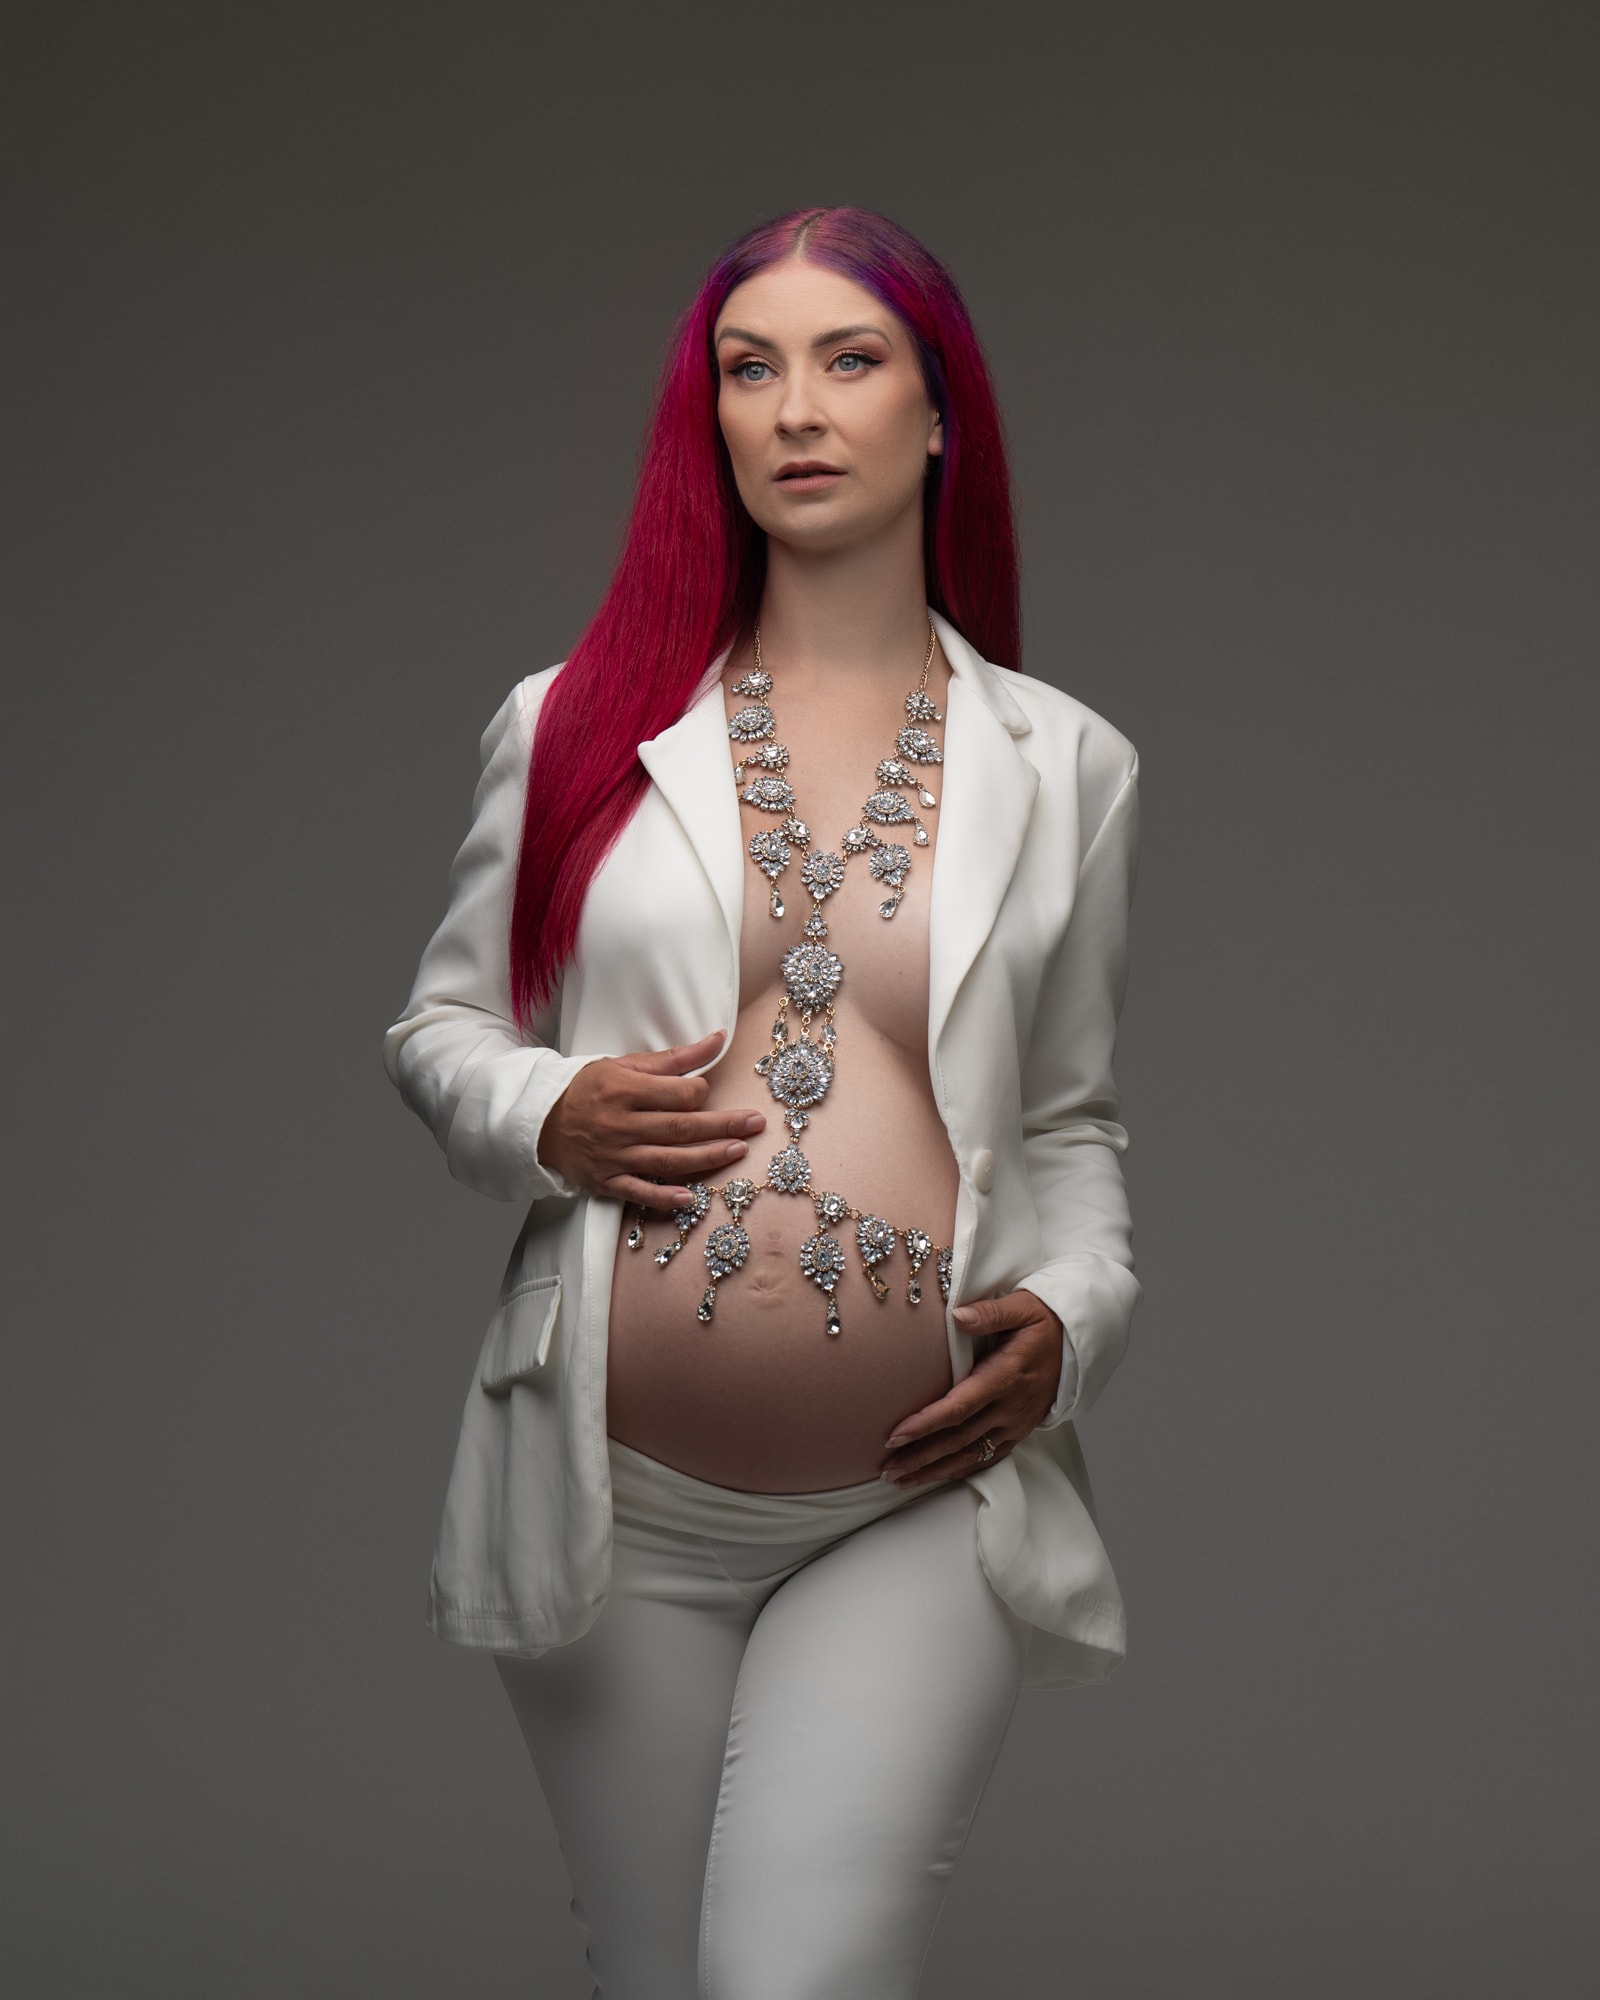 Fashionable Maternity Photoshoot